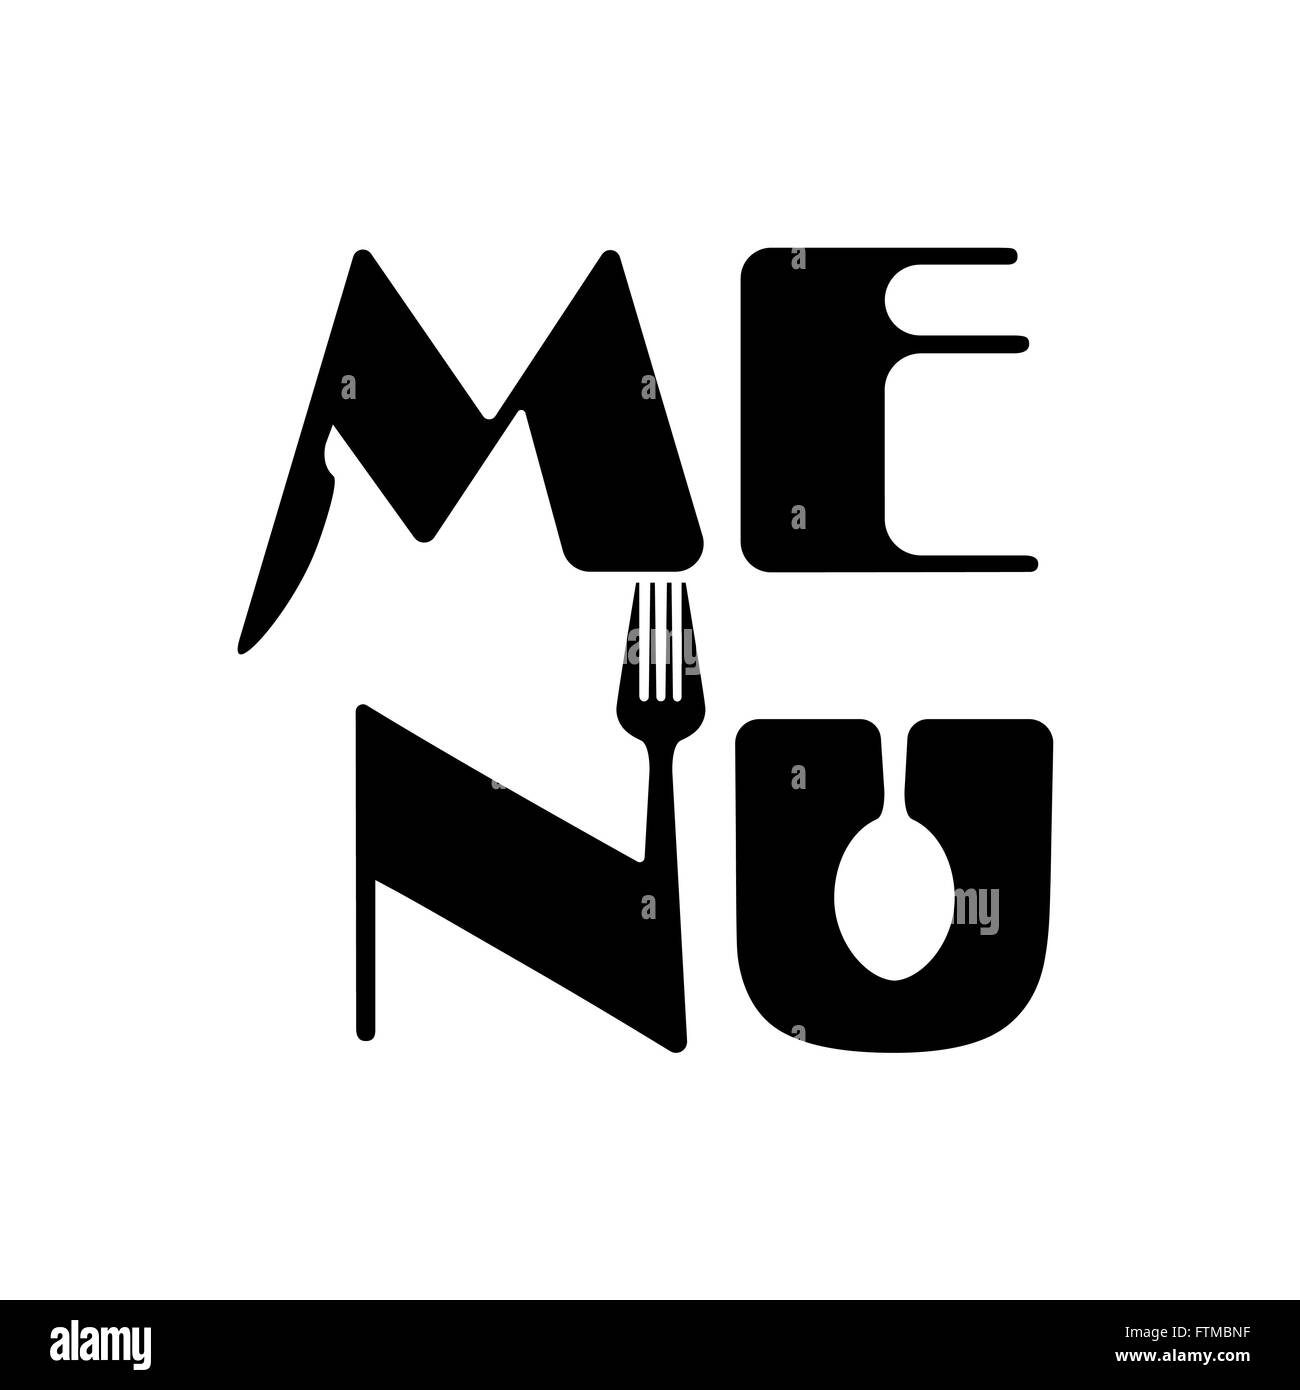 Cucina creativa parola menu elementi del logo design con cucchiaio, coltello e forchetta.fast food logo,cibo e bevande concetto.illustrazione vettoriale Illustrazione Vettoriale